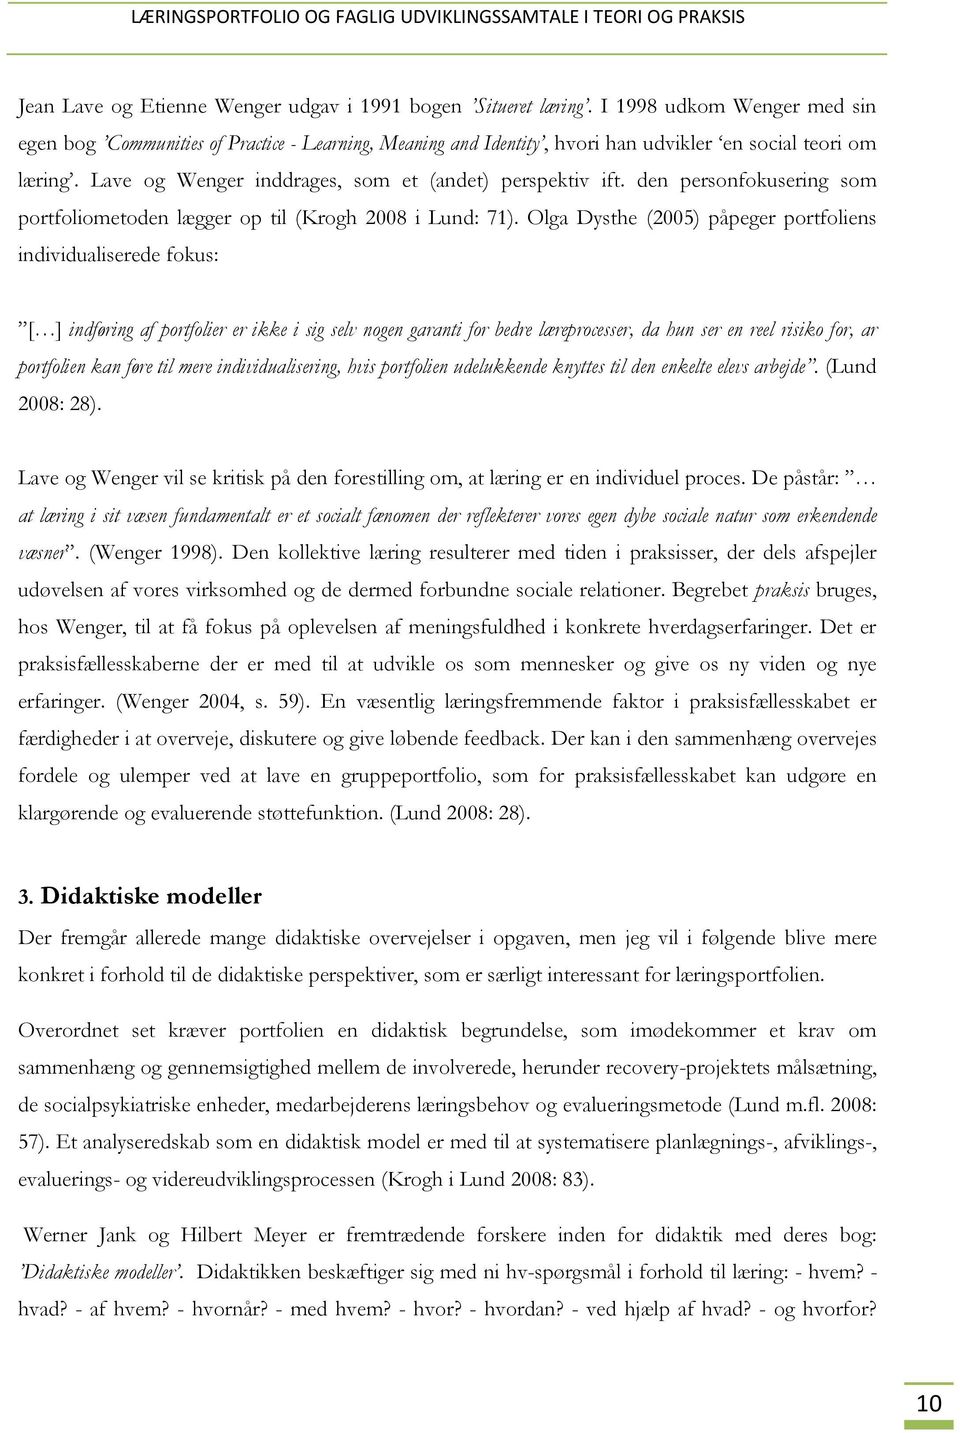 den personfokusering som portfoliometoden lægger op til (Krogh 2008 i Lund: 71).